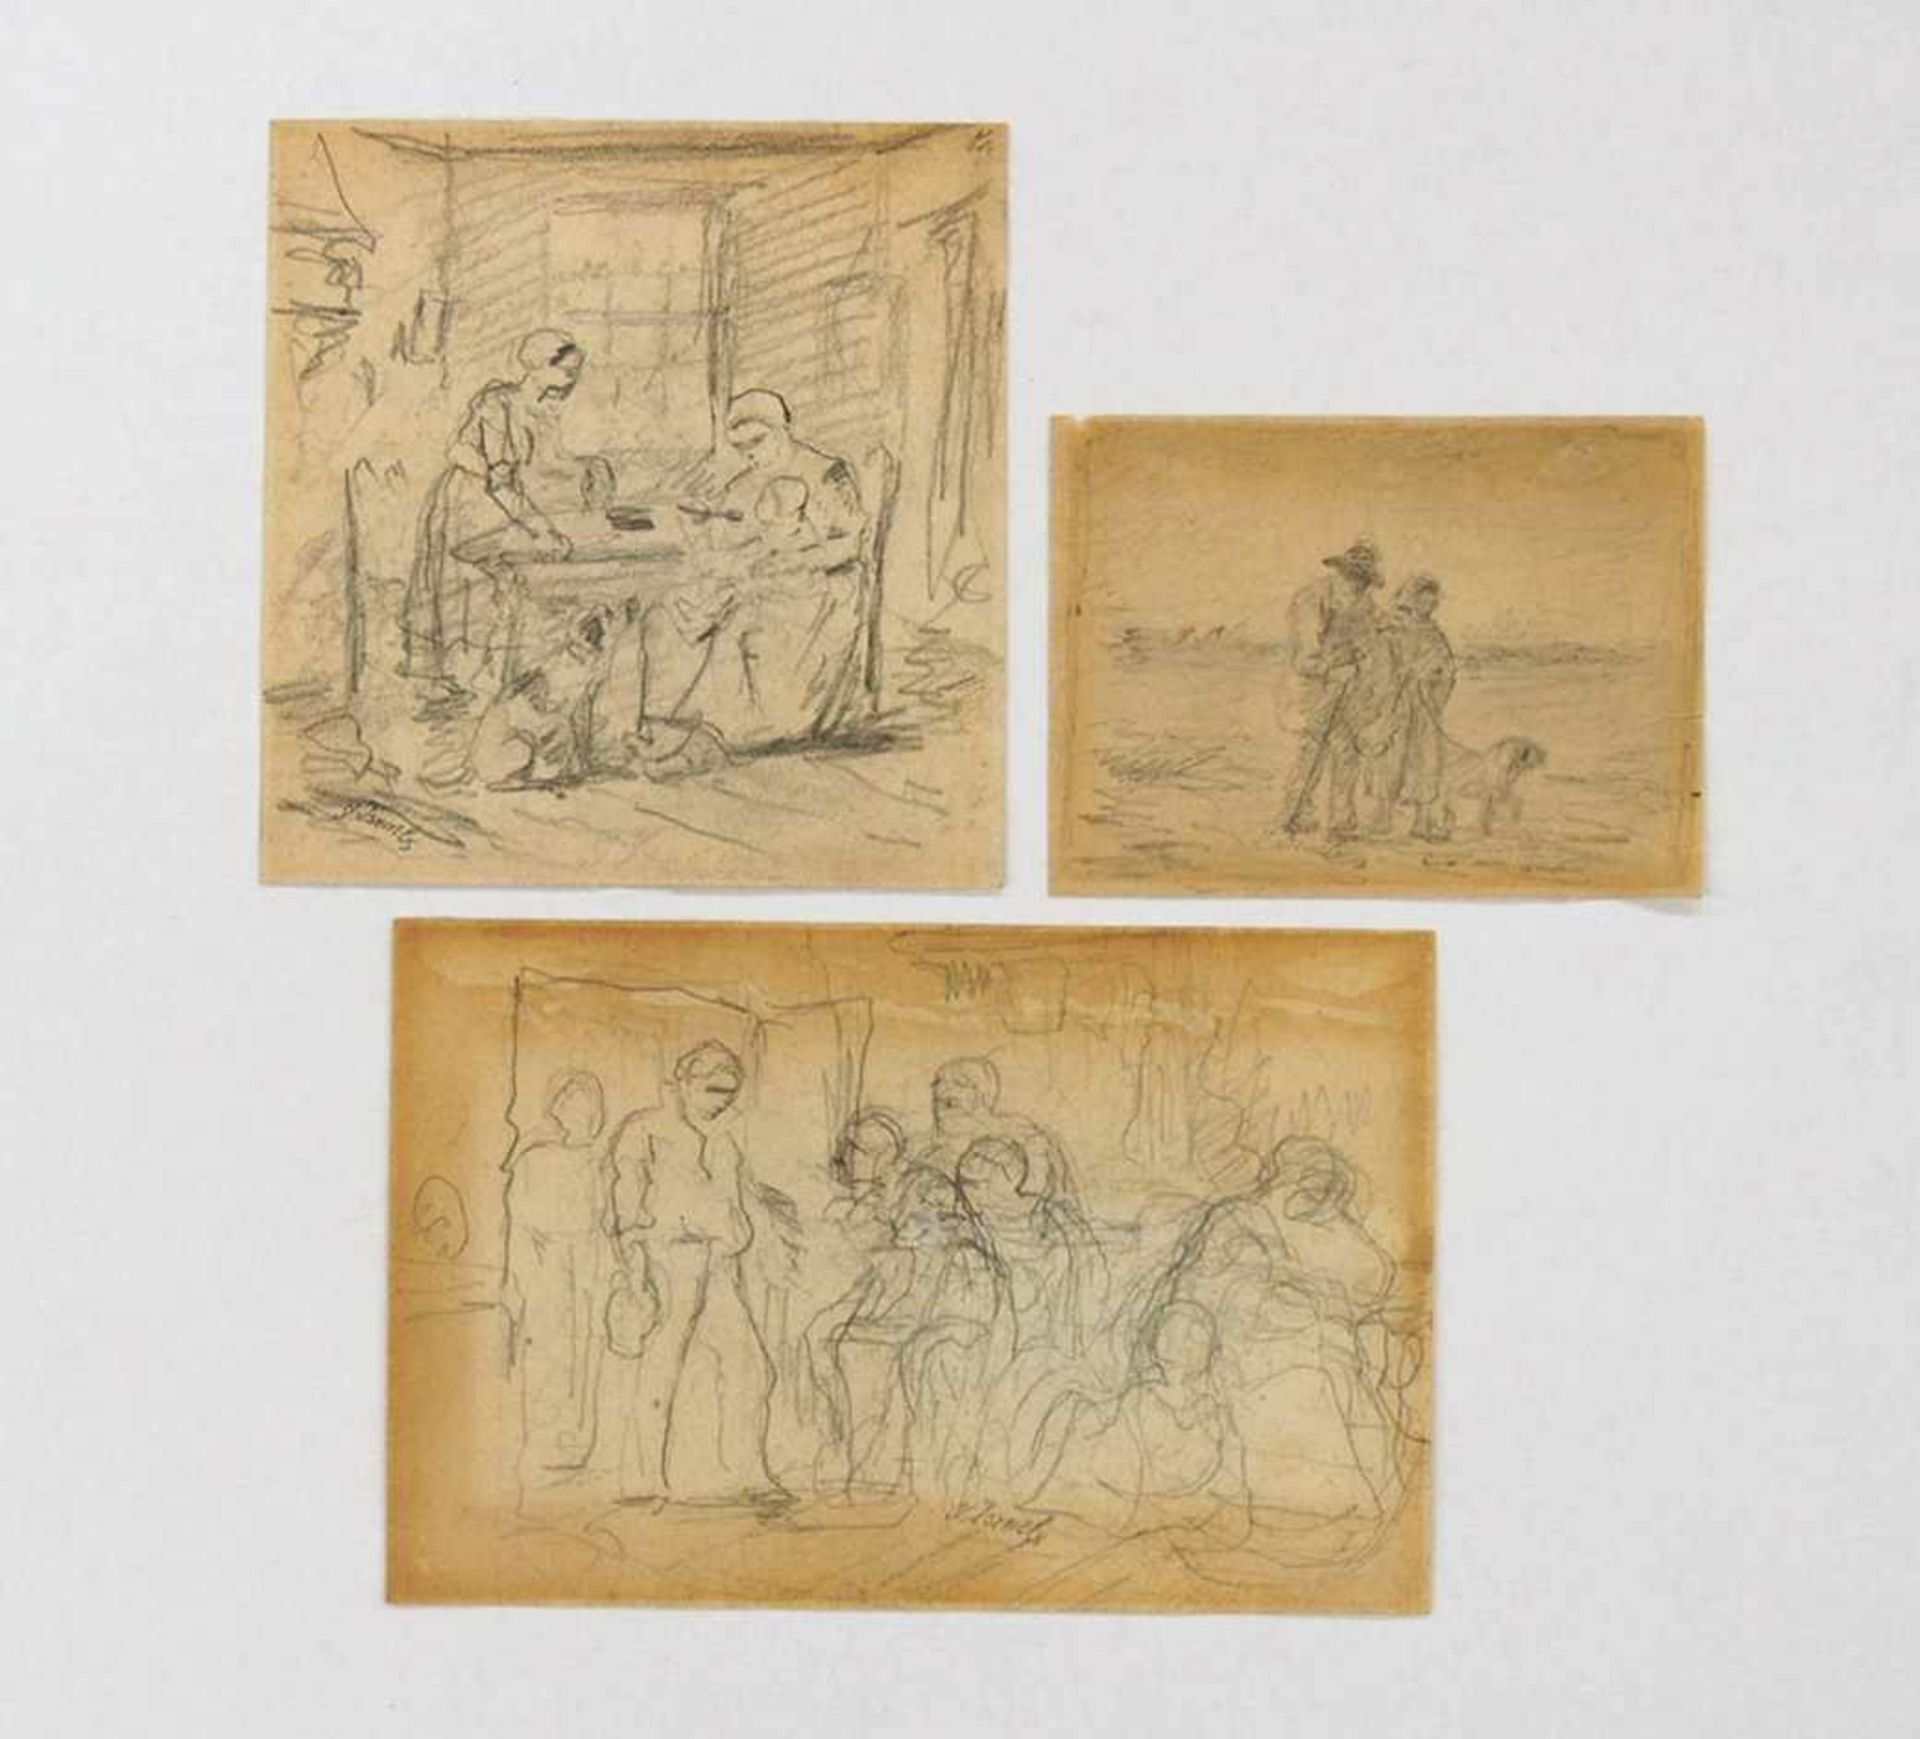 ISRAELS, Jozef1824-1911Drei Studienblätter mit sechs ZeichnungenKohle auf Papier, bis zu 16 x 23 cm,